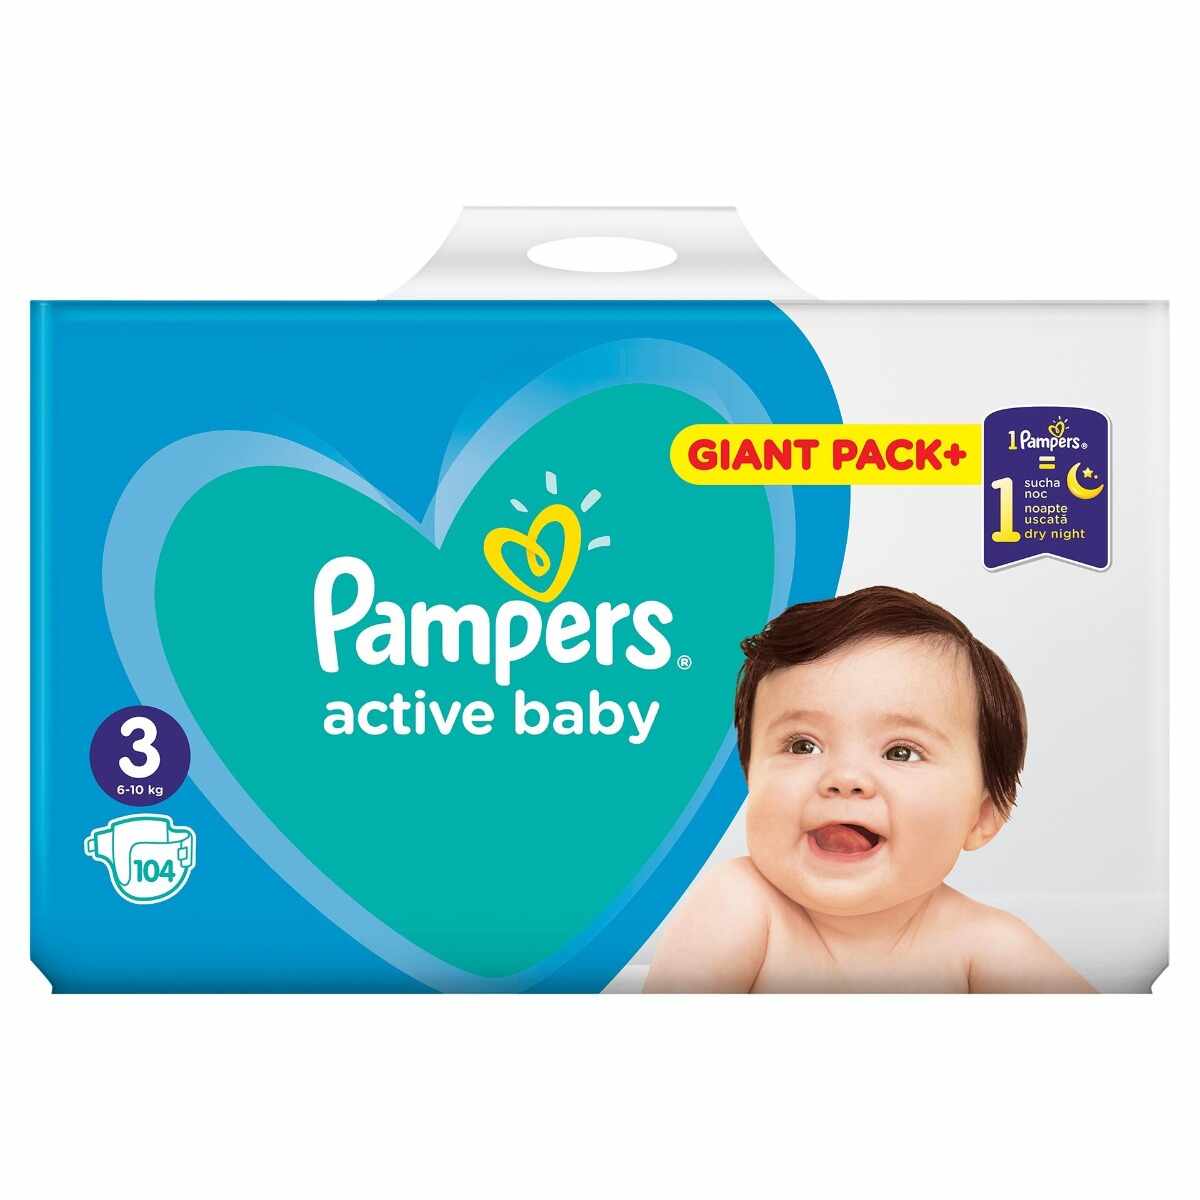 Scutece Active Baby Giant Pack marimea 3 pentru 6-10kg, 104 bucati, Pampers